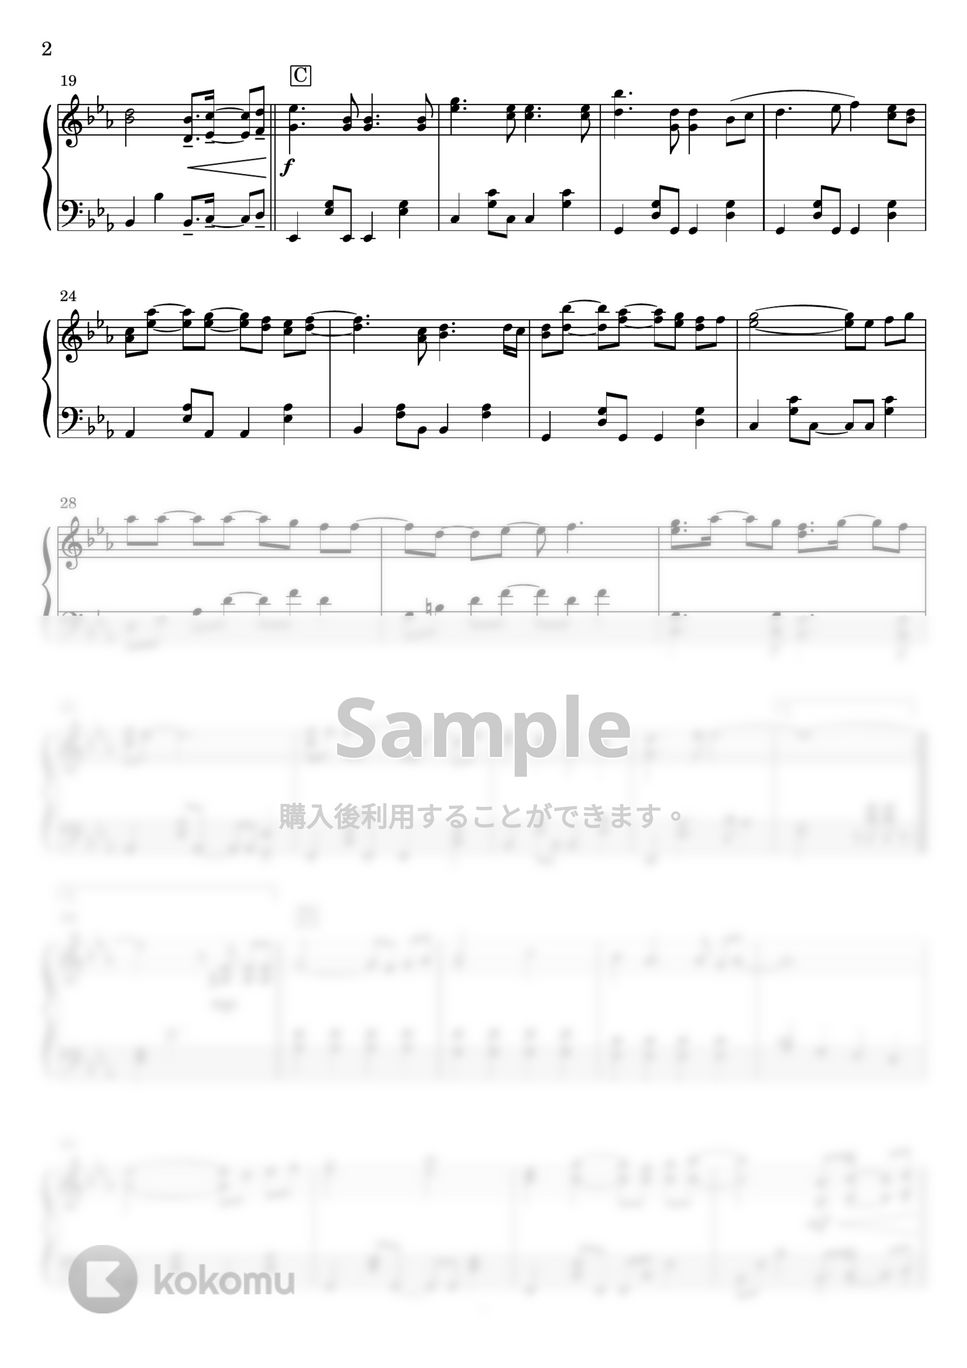 スピッツ - ときめきpart1 (フルver.) (ピアノソロ) by Miz